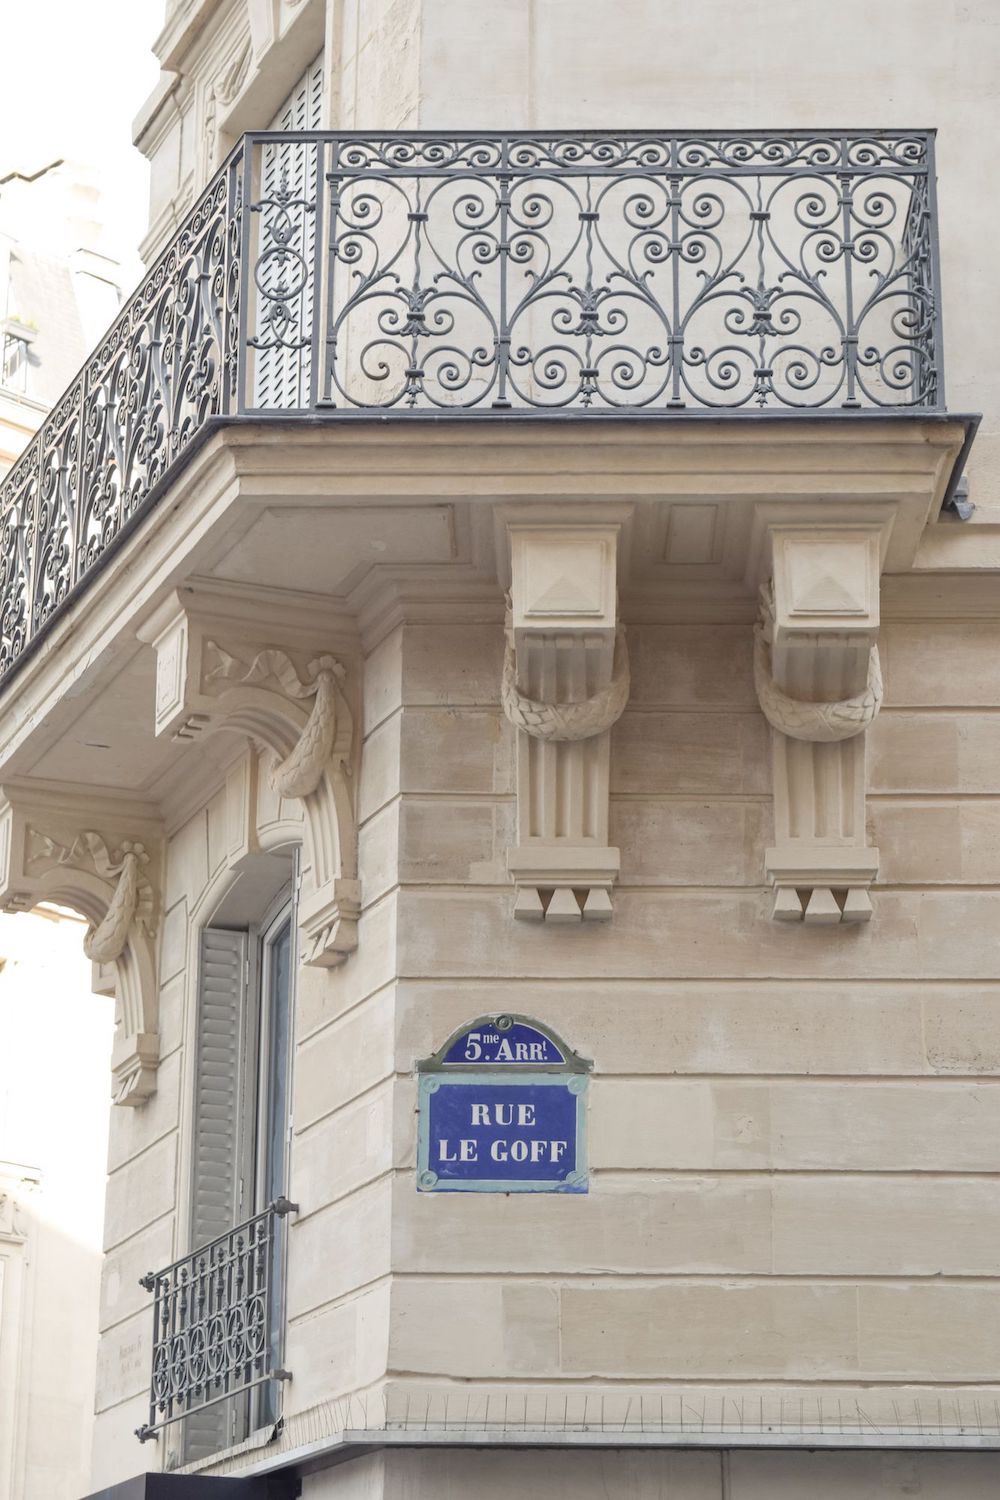 Parisian Street Sign